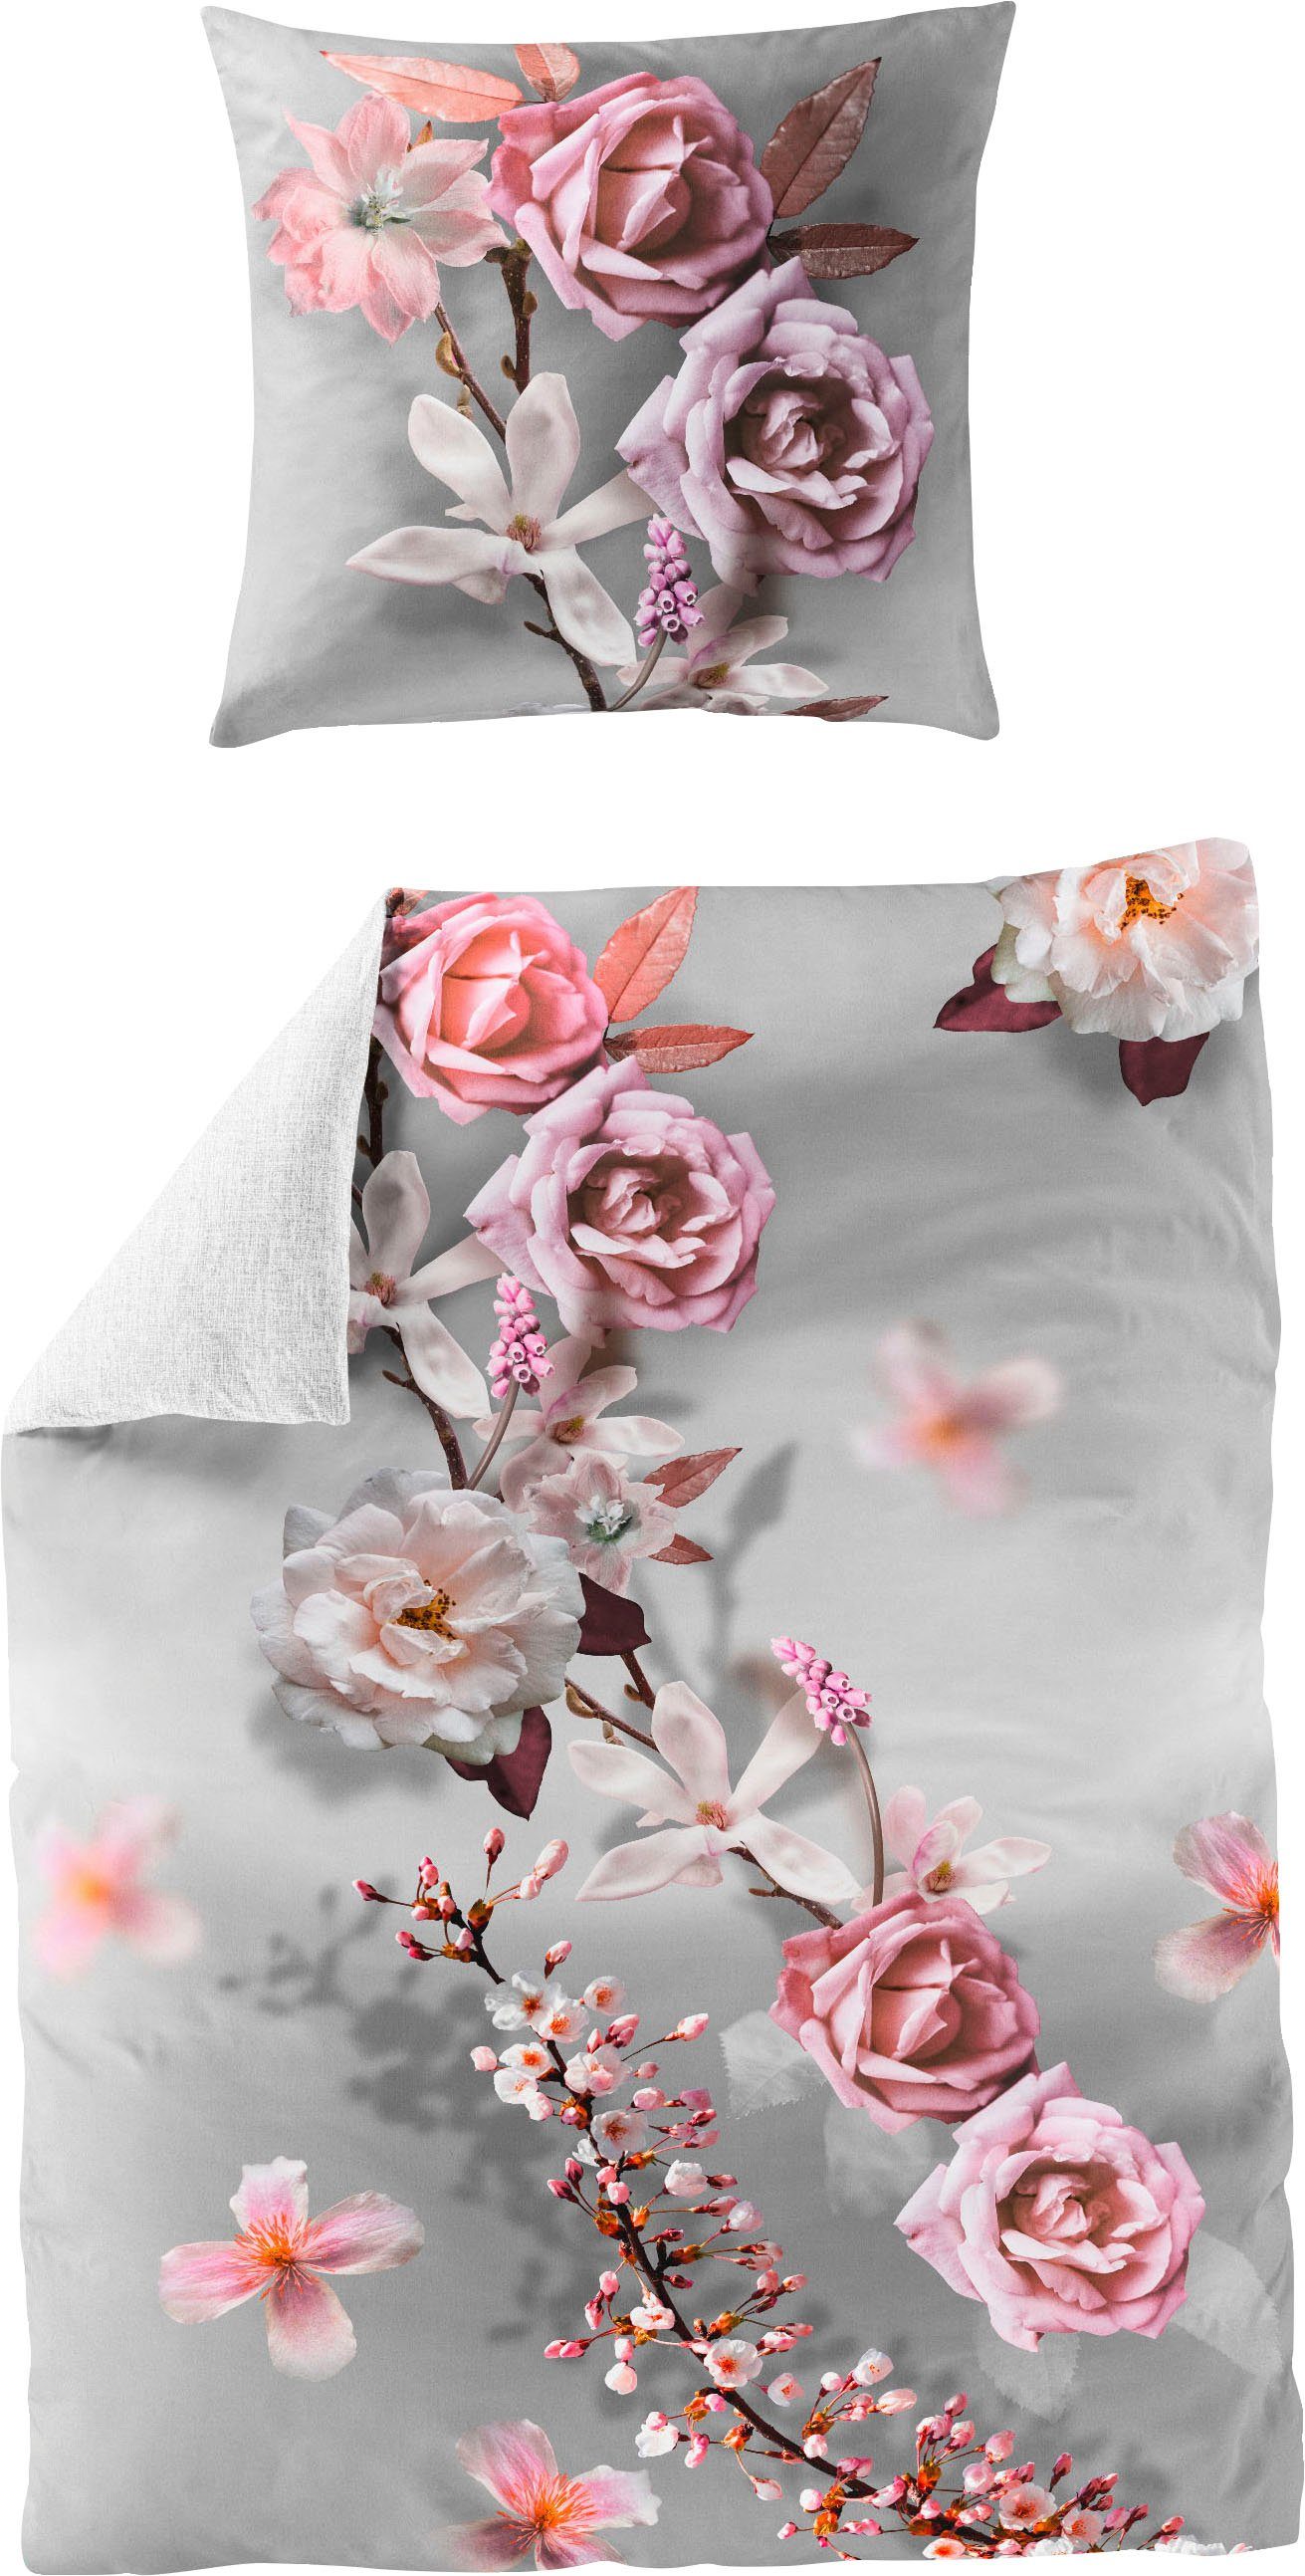 Wendebettwäsche Pink Rose, BIERBAUM, Mako-Satin, 2 teilig, mit floralem Print